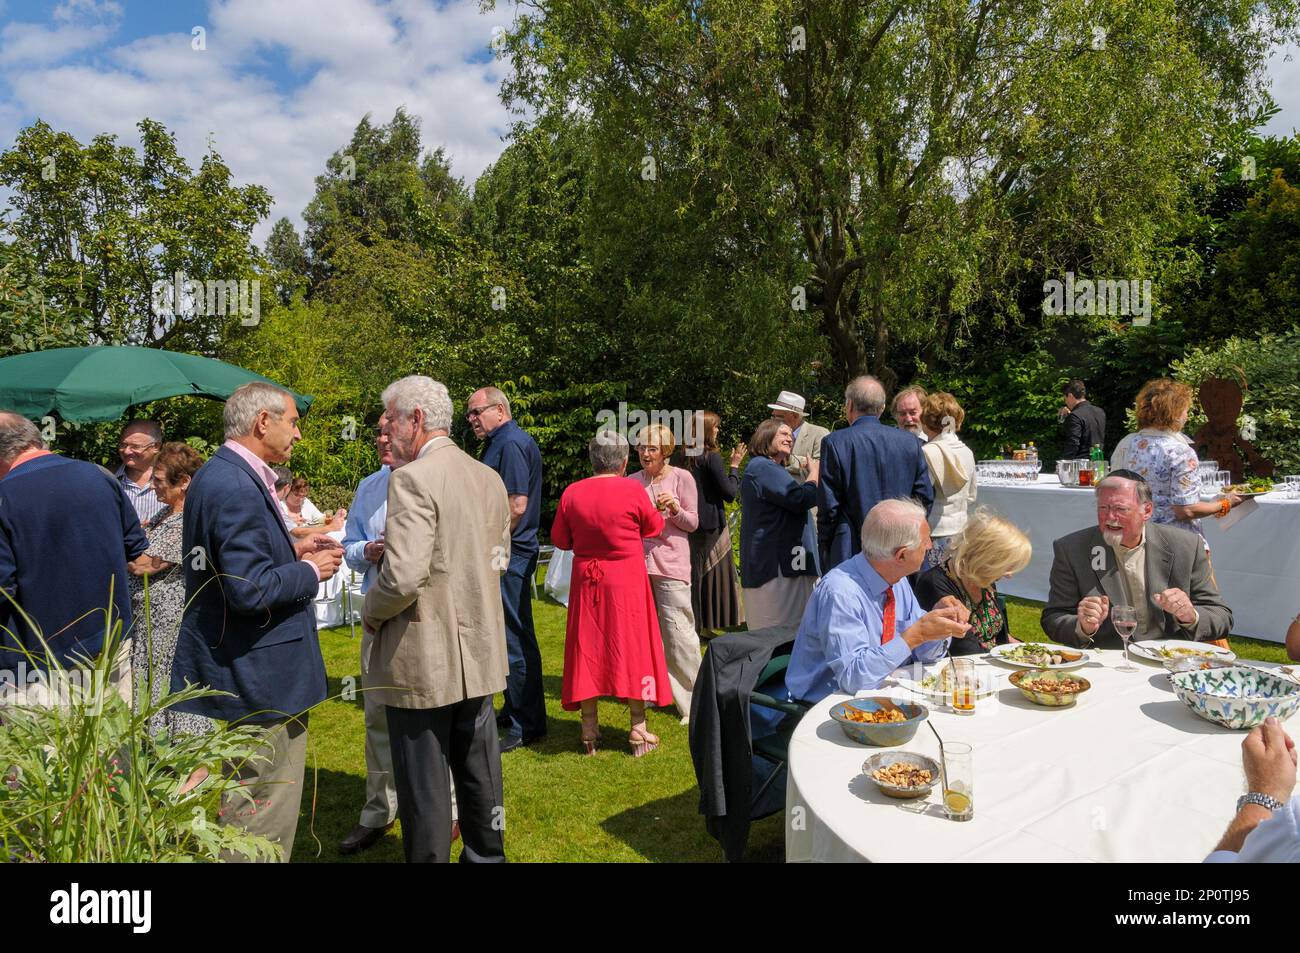 Des gens de classe moyenne qui socialisent lors d'une fête de jardin, Londres, Angleterre, Royaume-Uni Banque D'Images